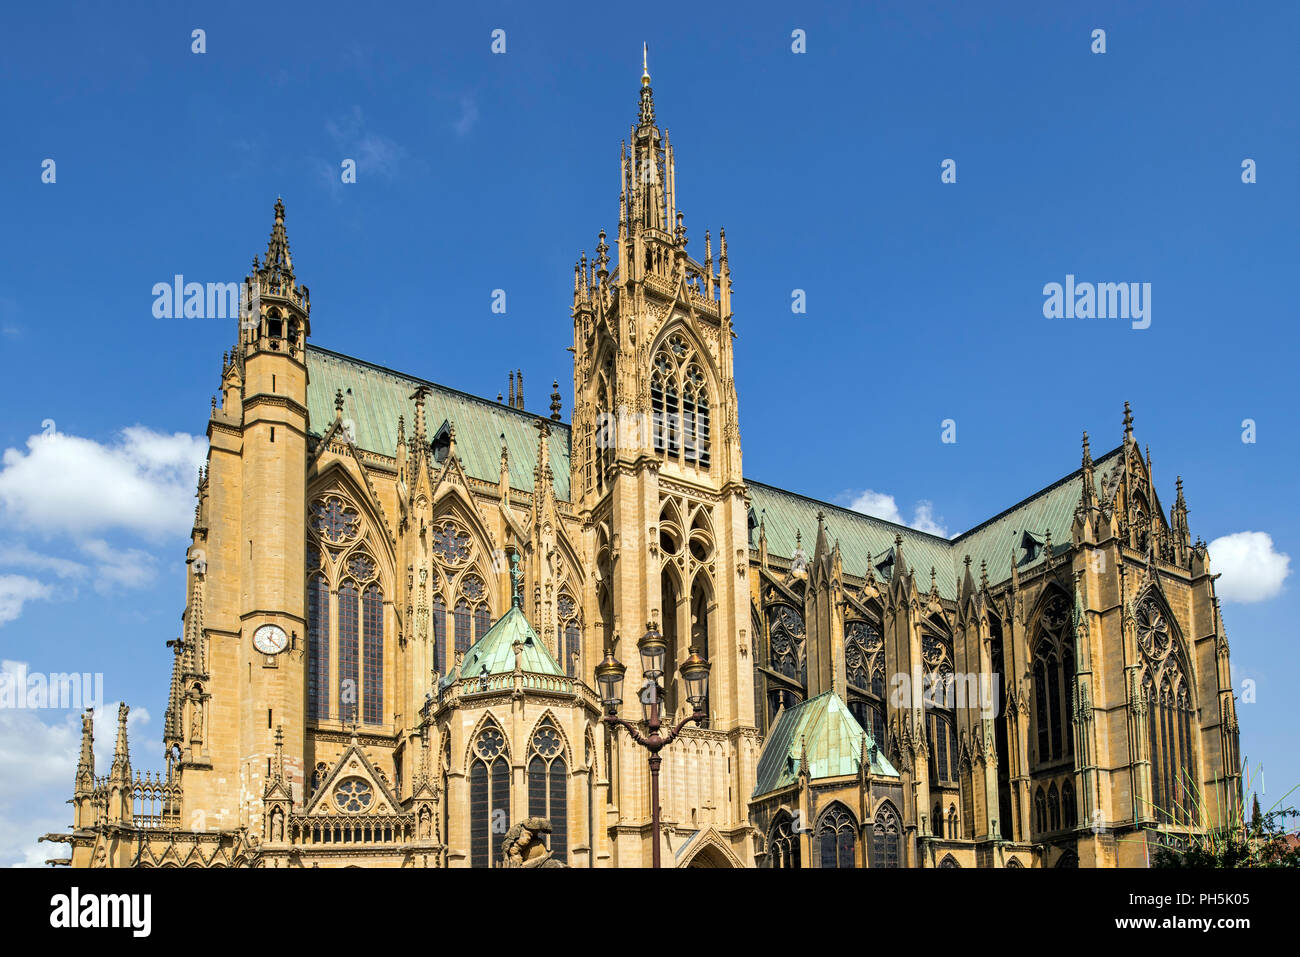 Französische gotische Kathedrale von Saint Stephen von Metz/Cathédrale Saint-Étienne de Metz/Metz Kathedrale in der Stadt Metz, Moselle, Lorraine, Frankreich Stockfoto